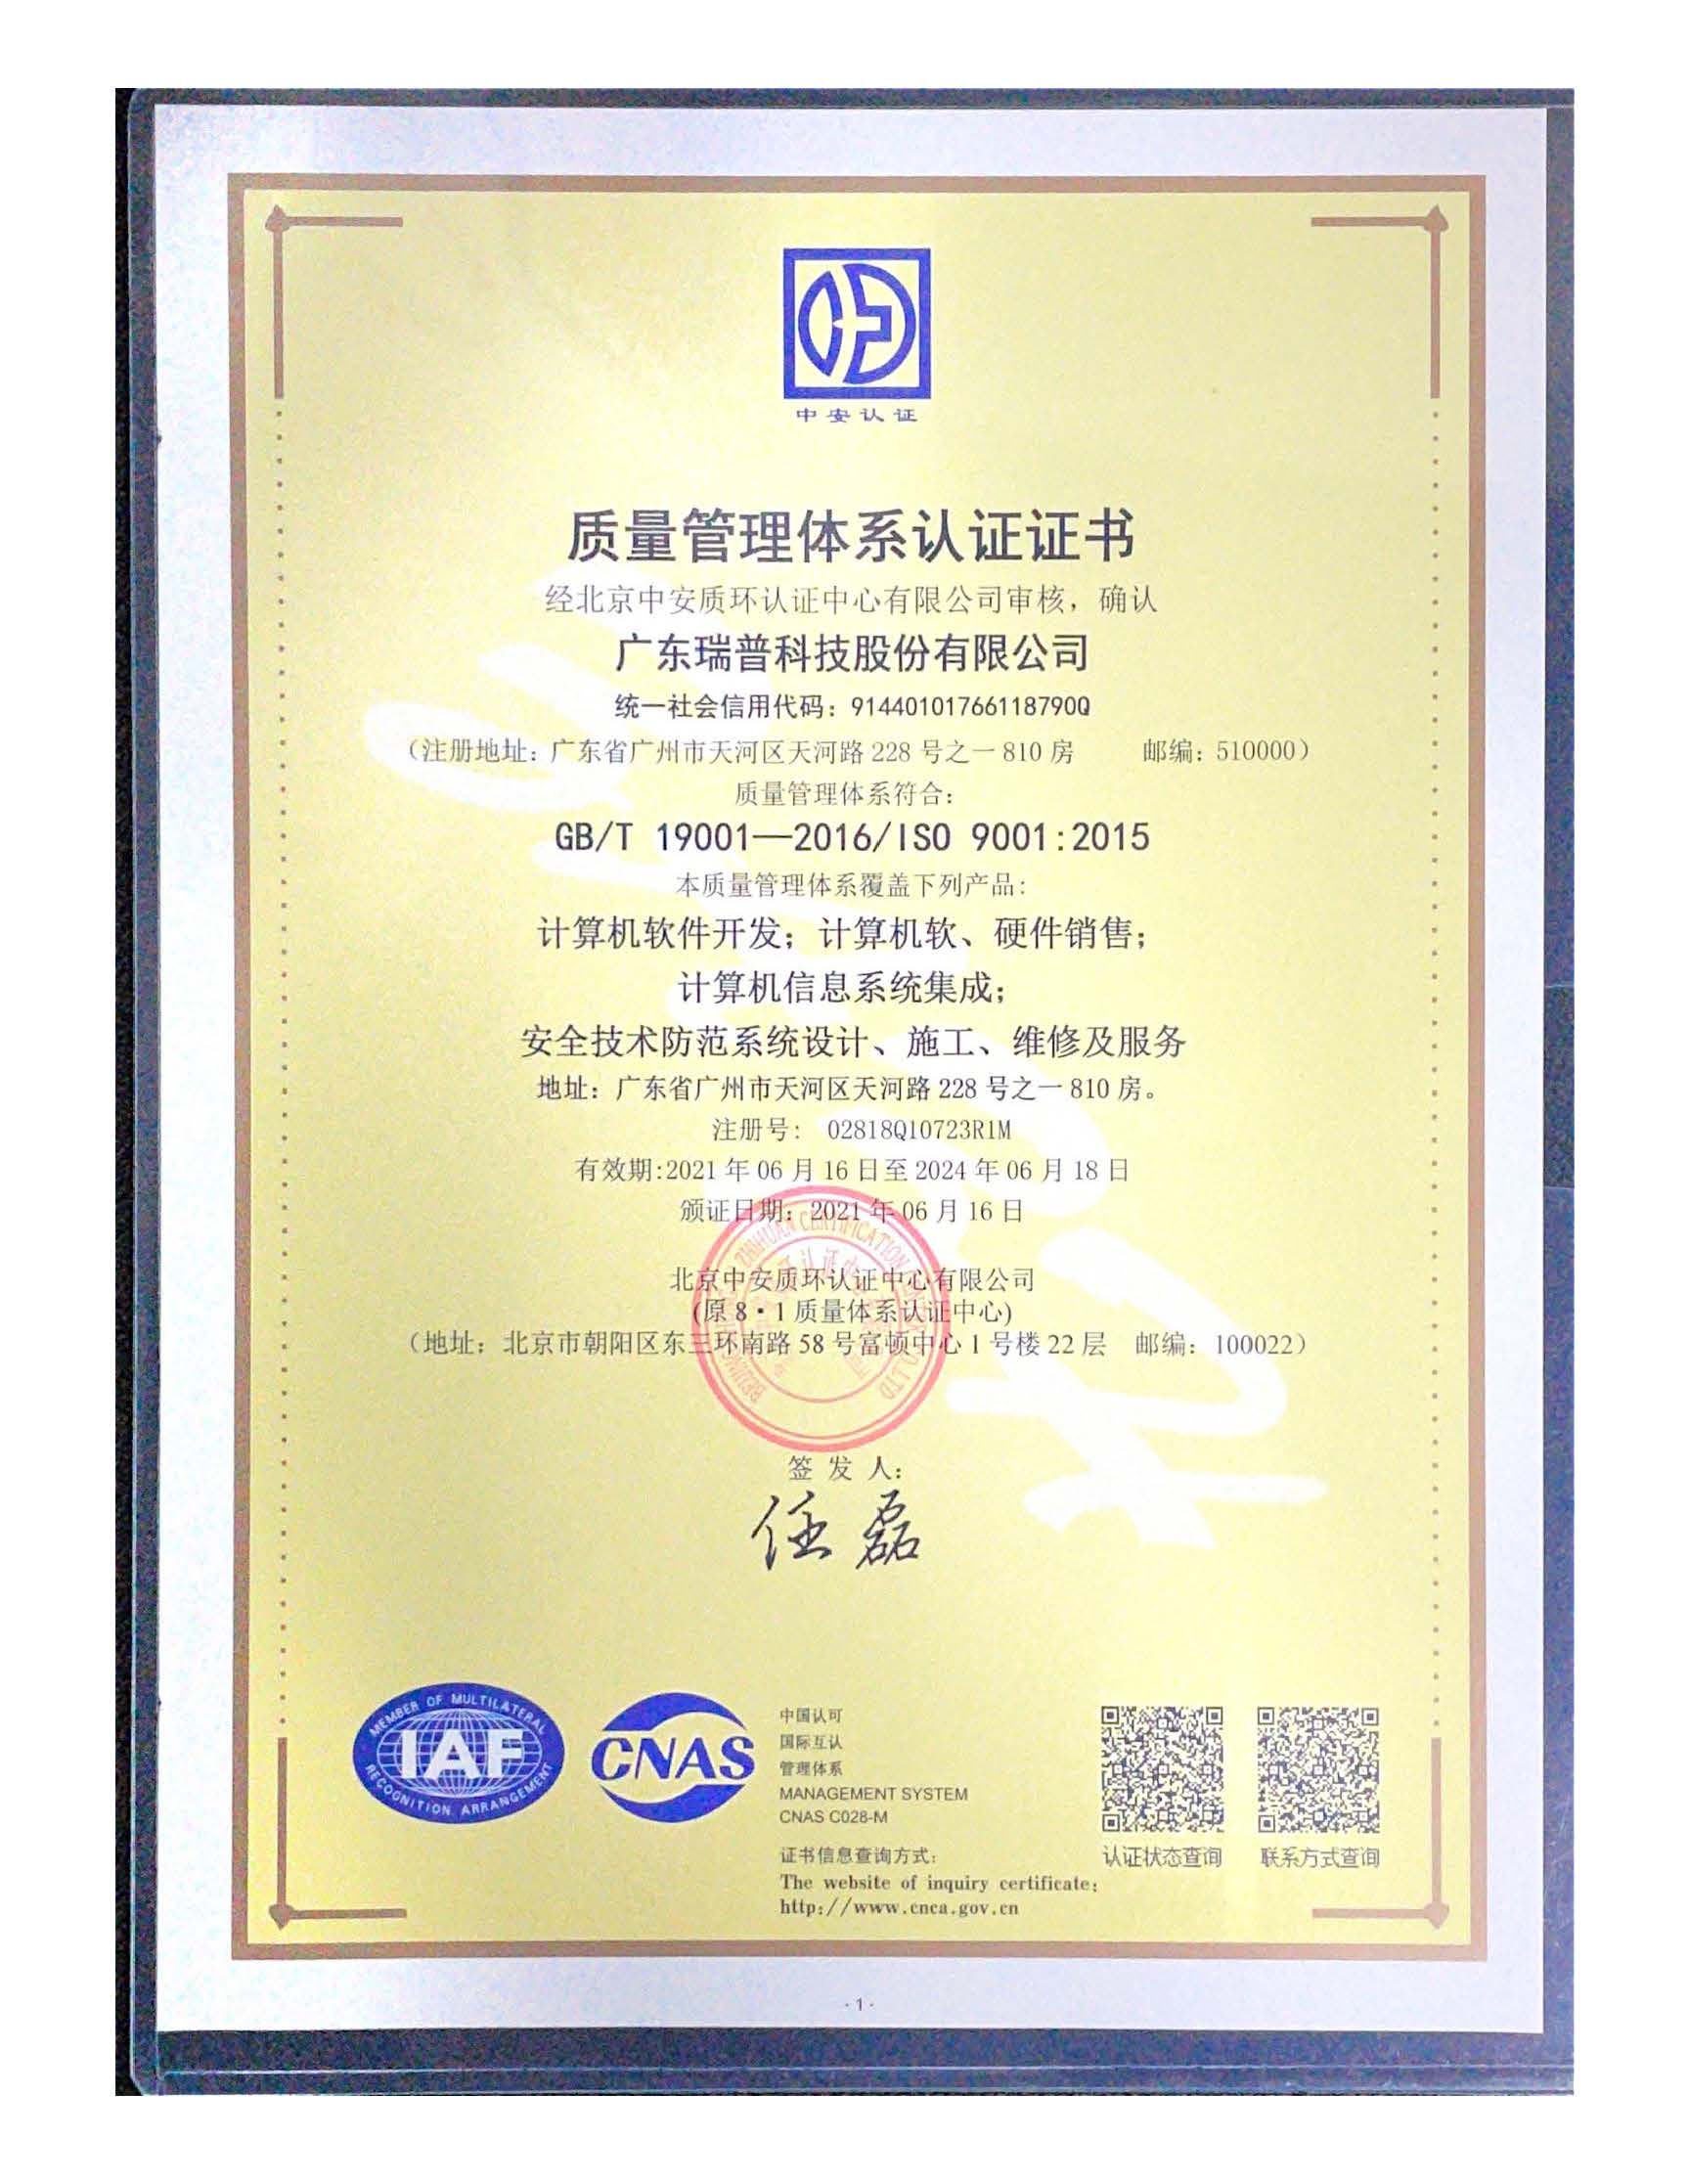 質量管理體系認證證書ISO 9001(中文版) 